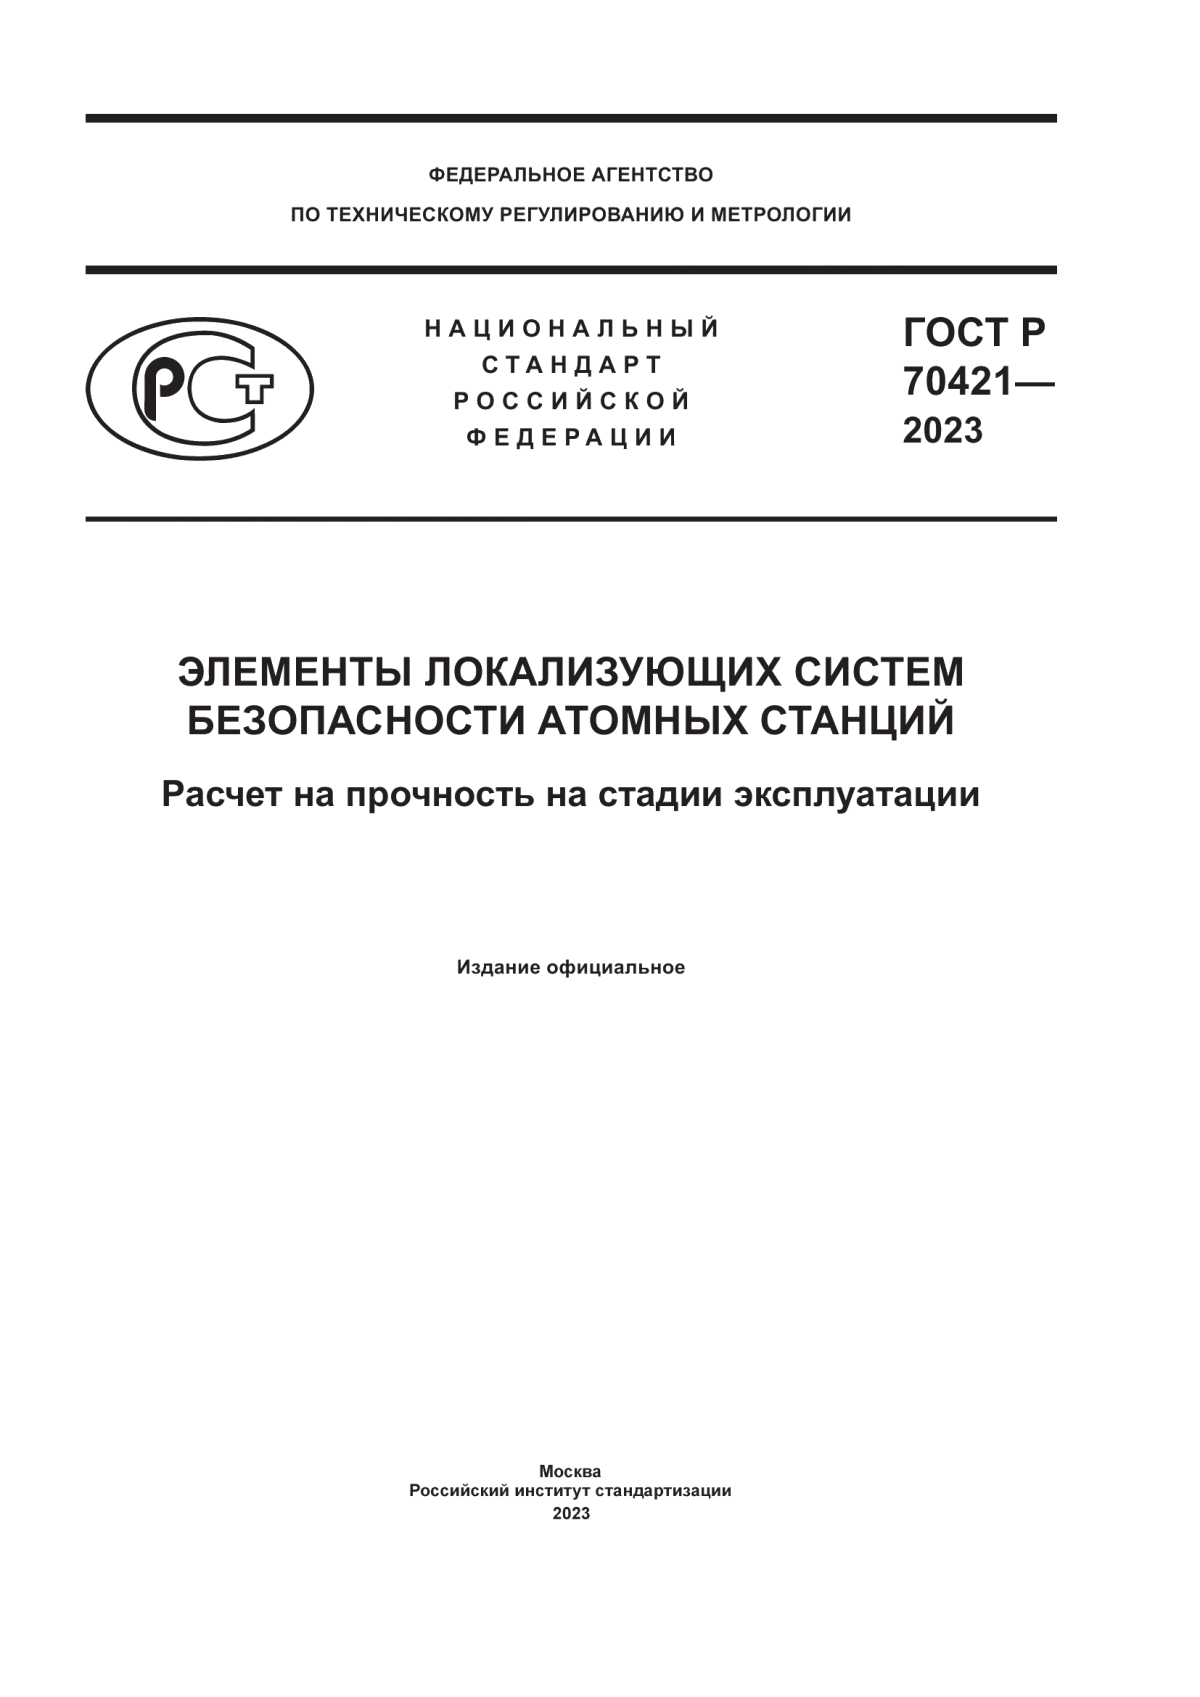 ГОСТ Р 70421-2023 Элементы локализующих систем безопасности атомных станций. Расчет на прочность на стадии эксплуатации